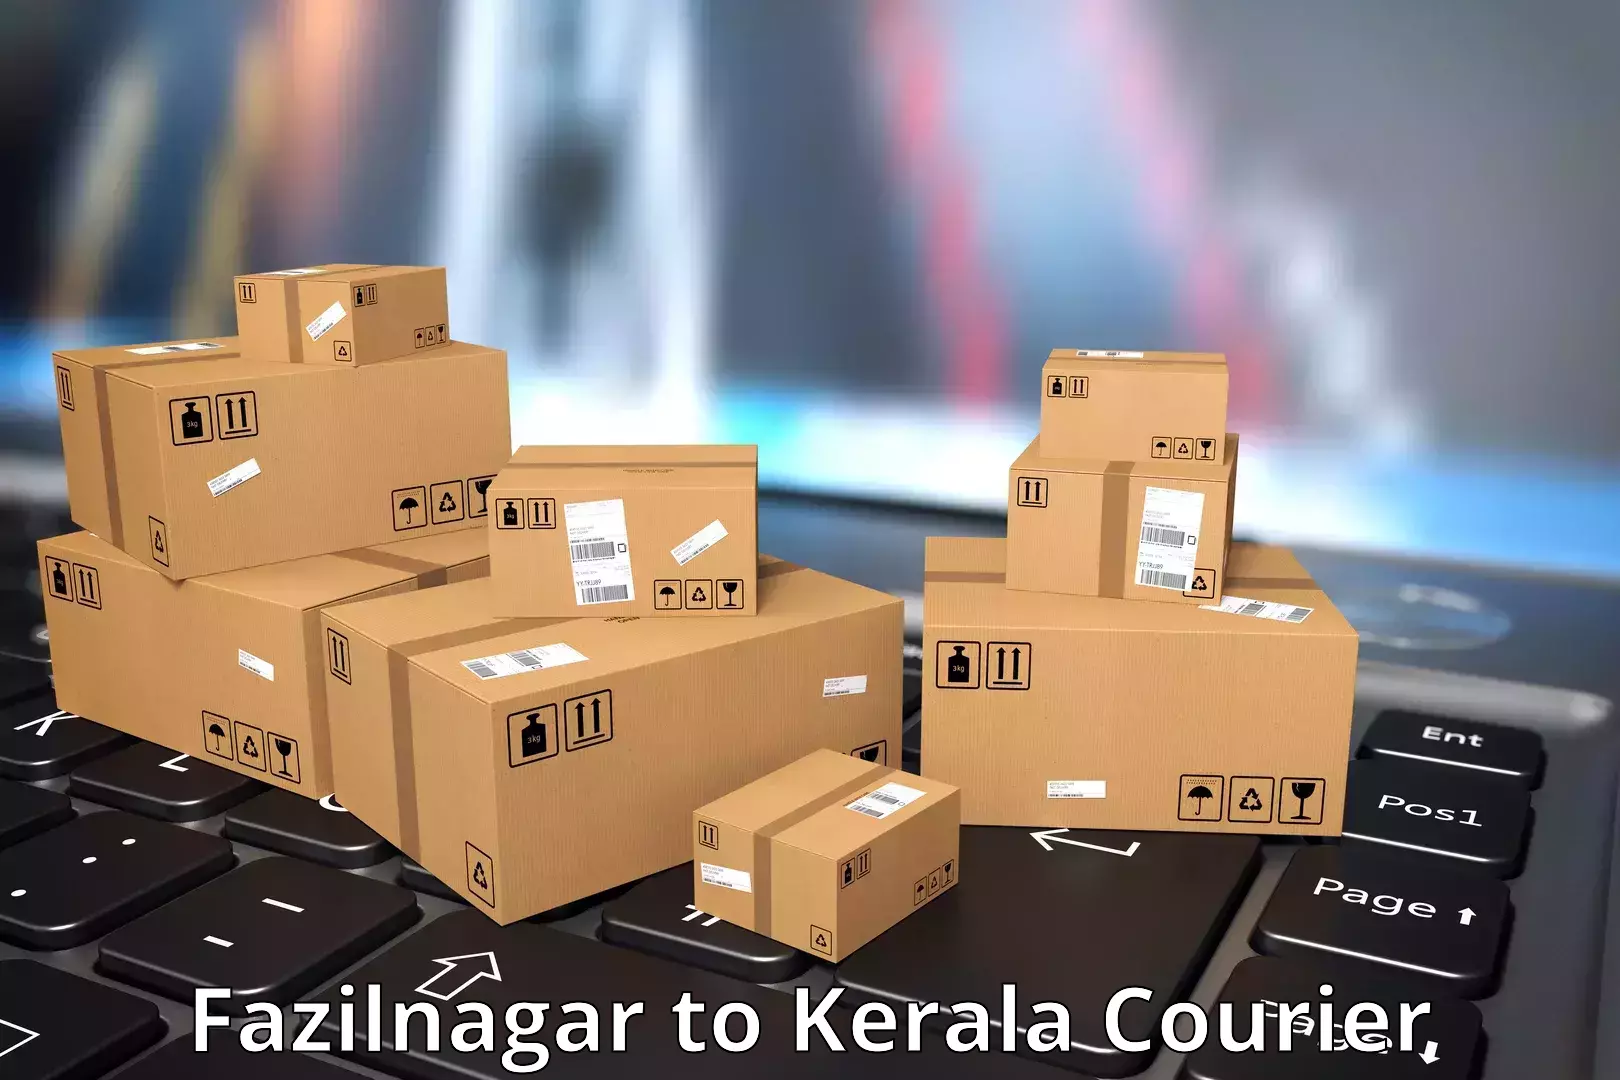 Business delivery service Fazilnagar to Kakkayam